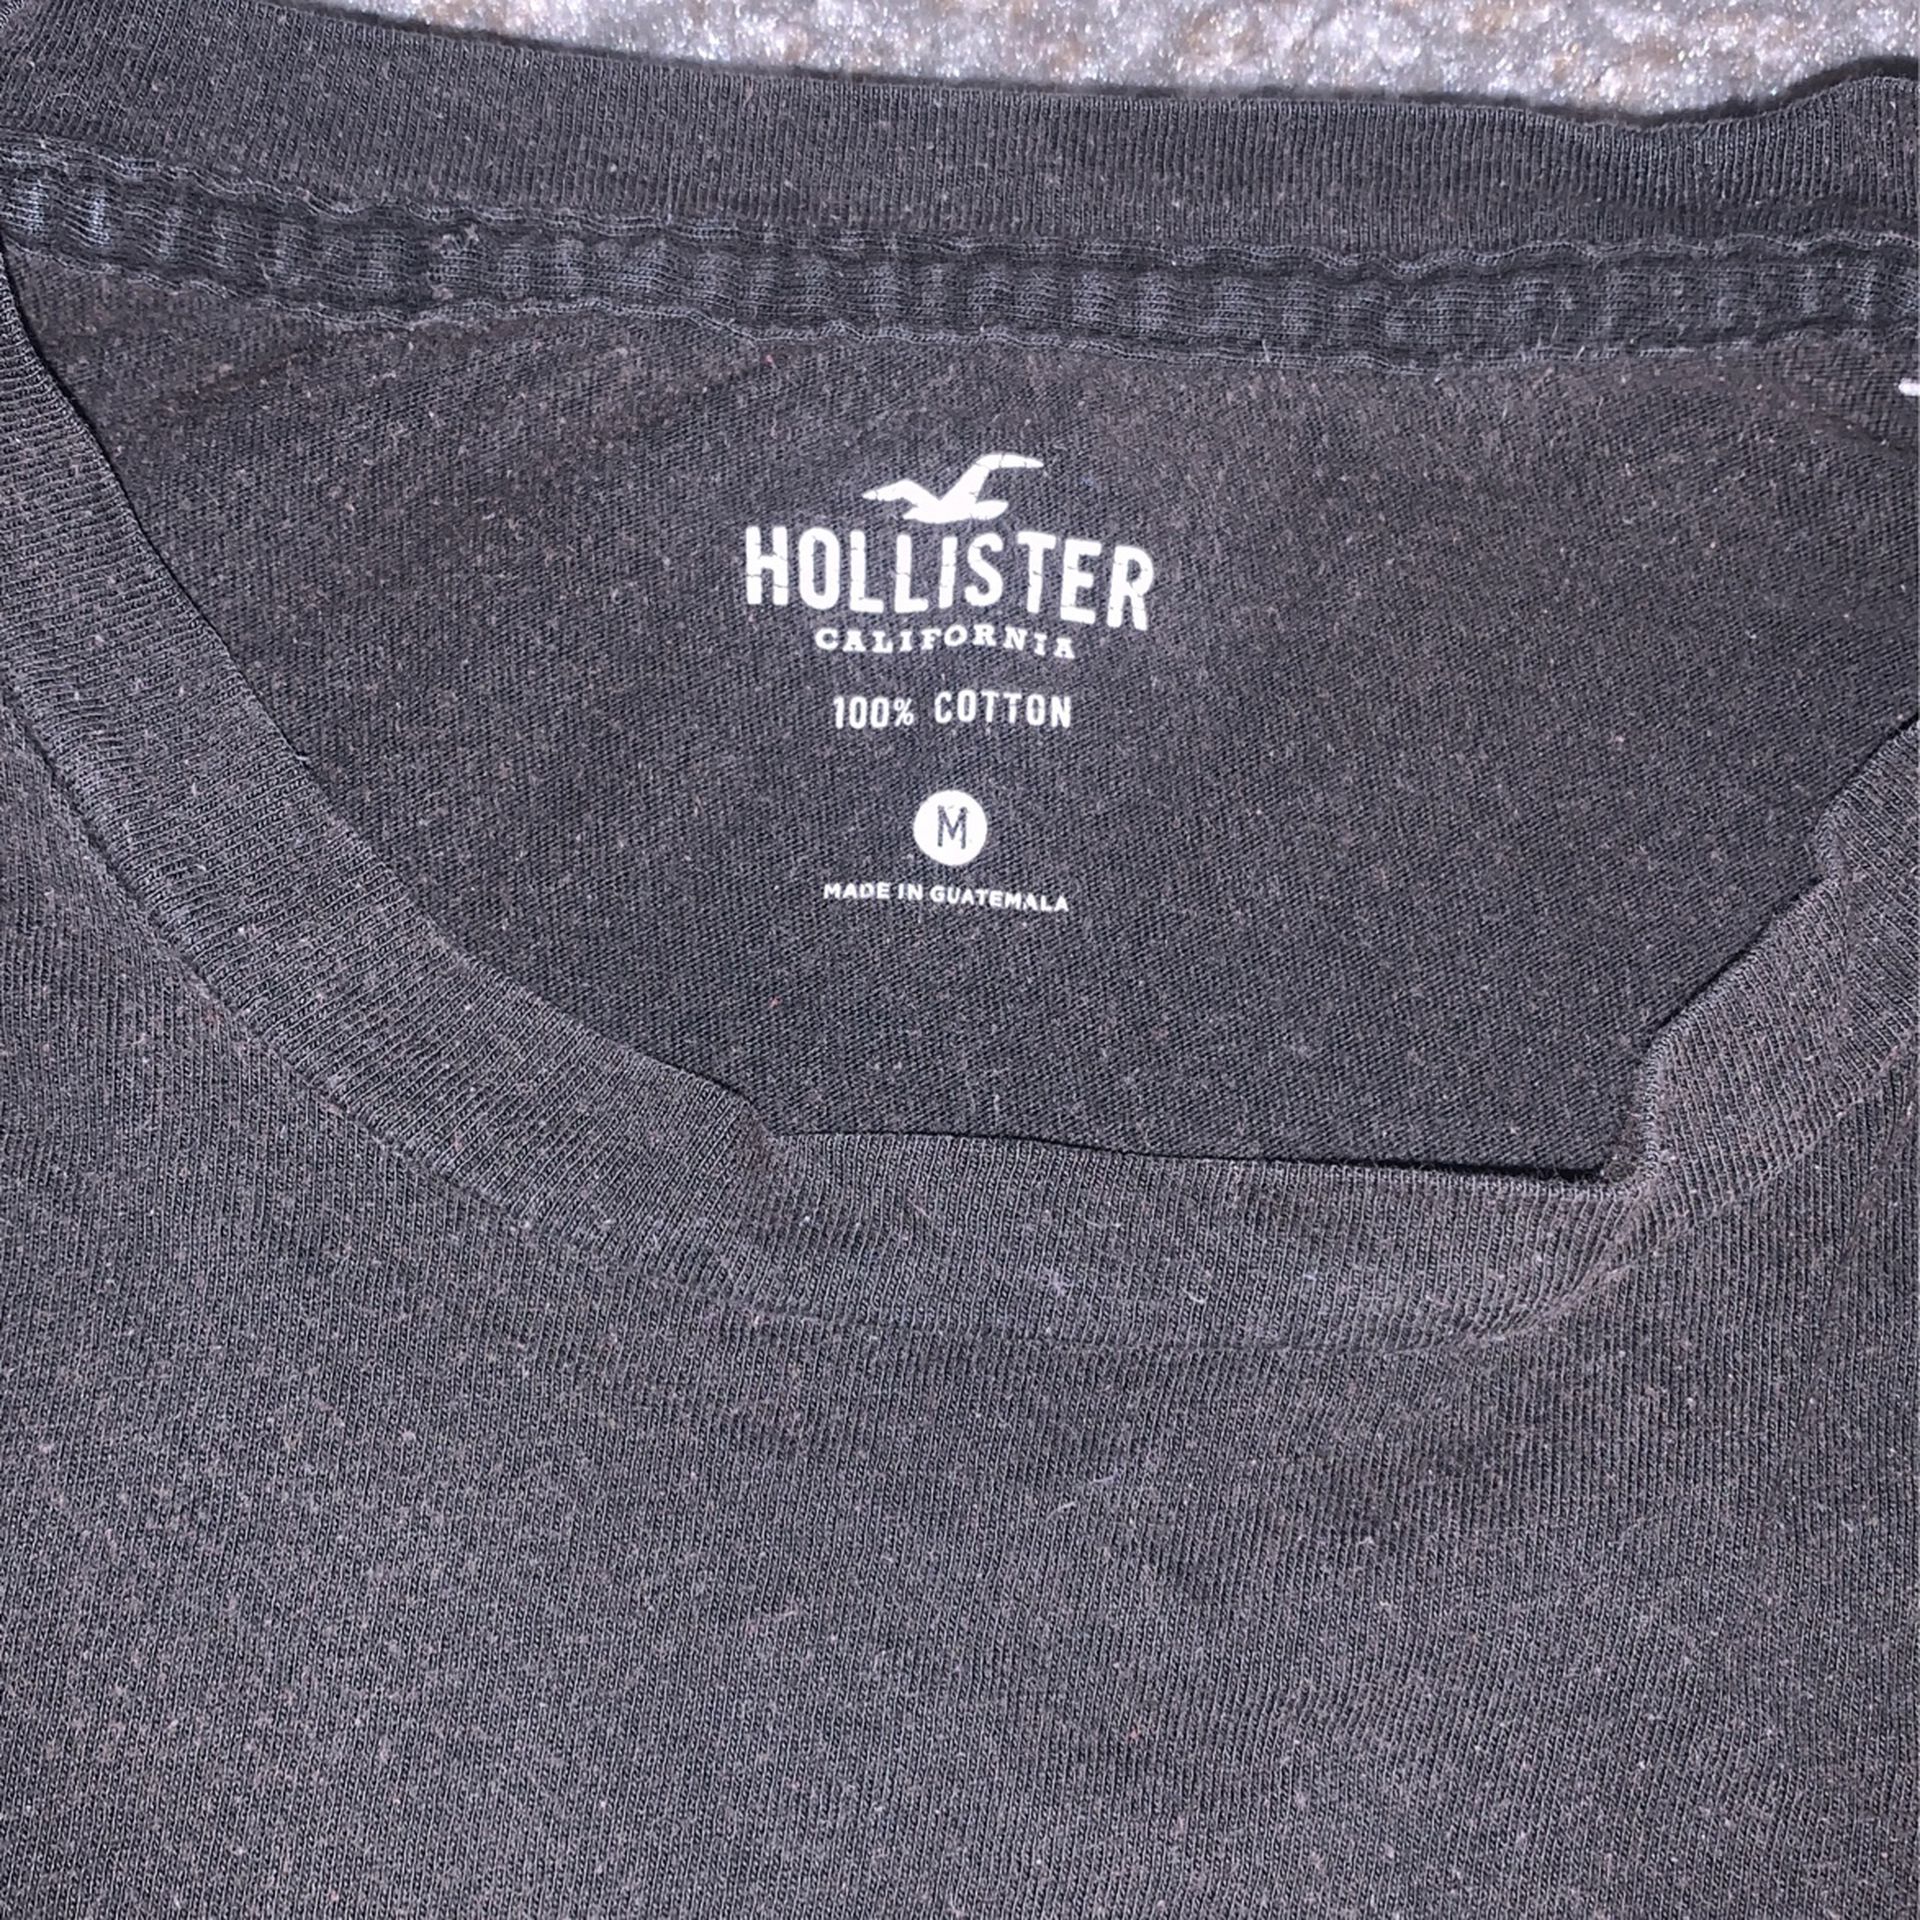 black Hollister tshirt